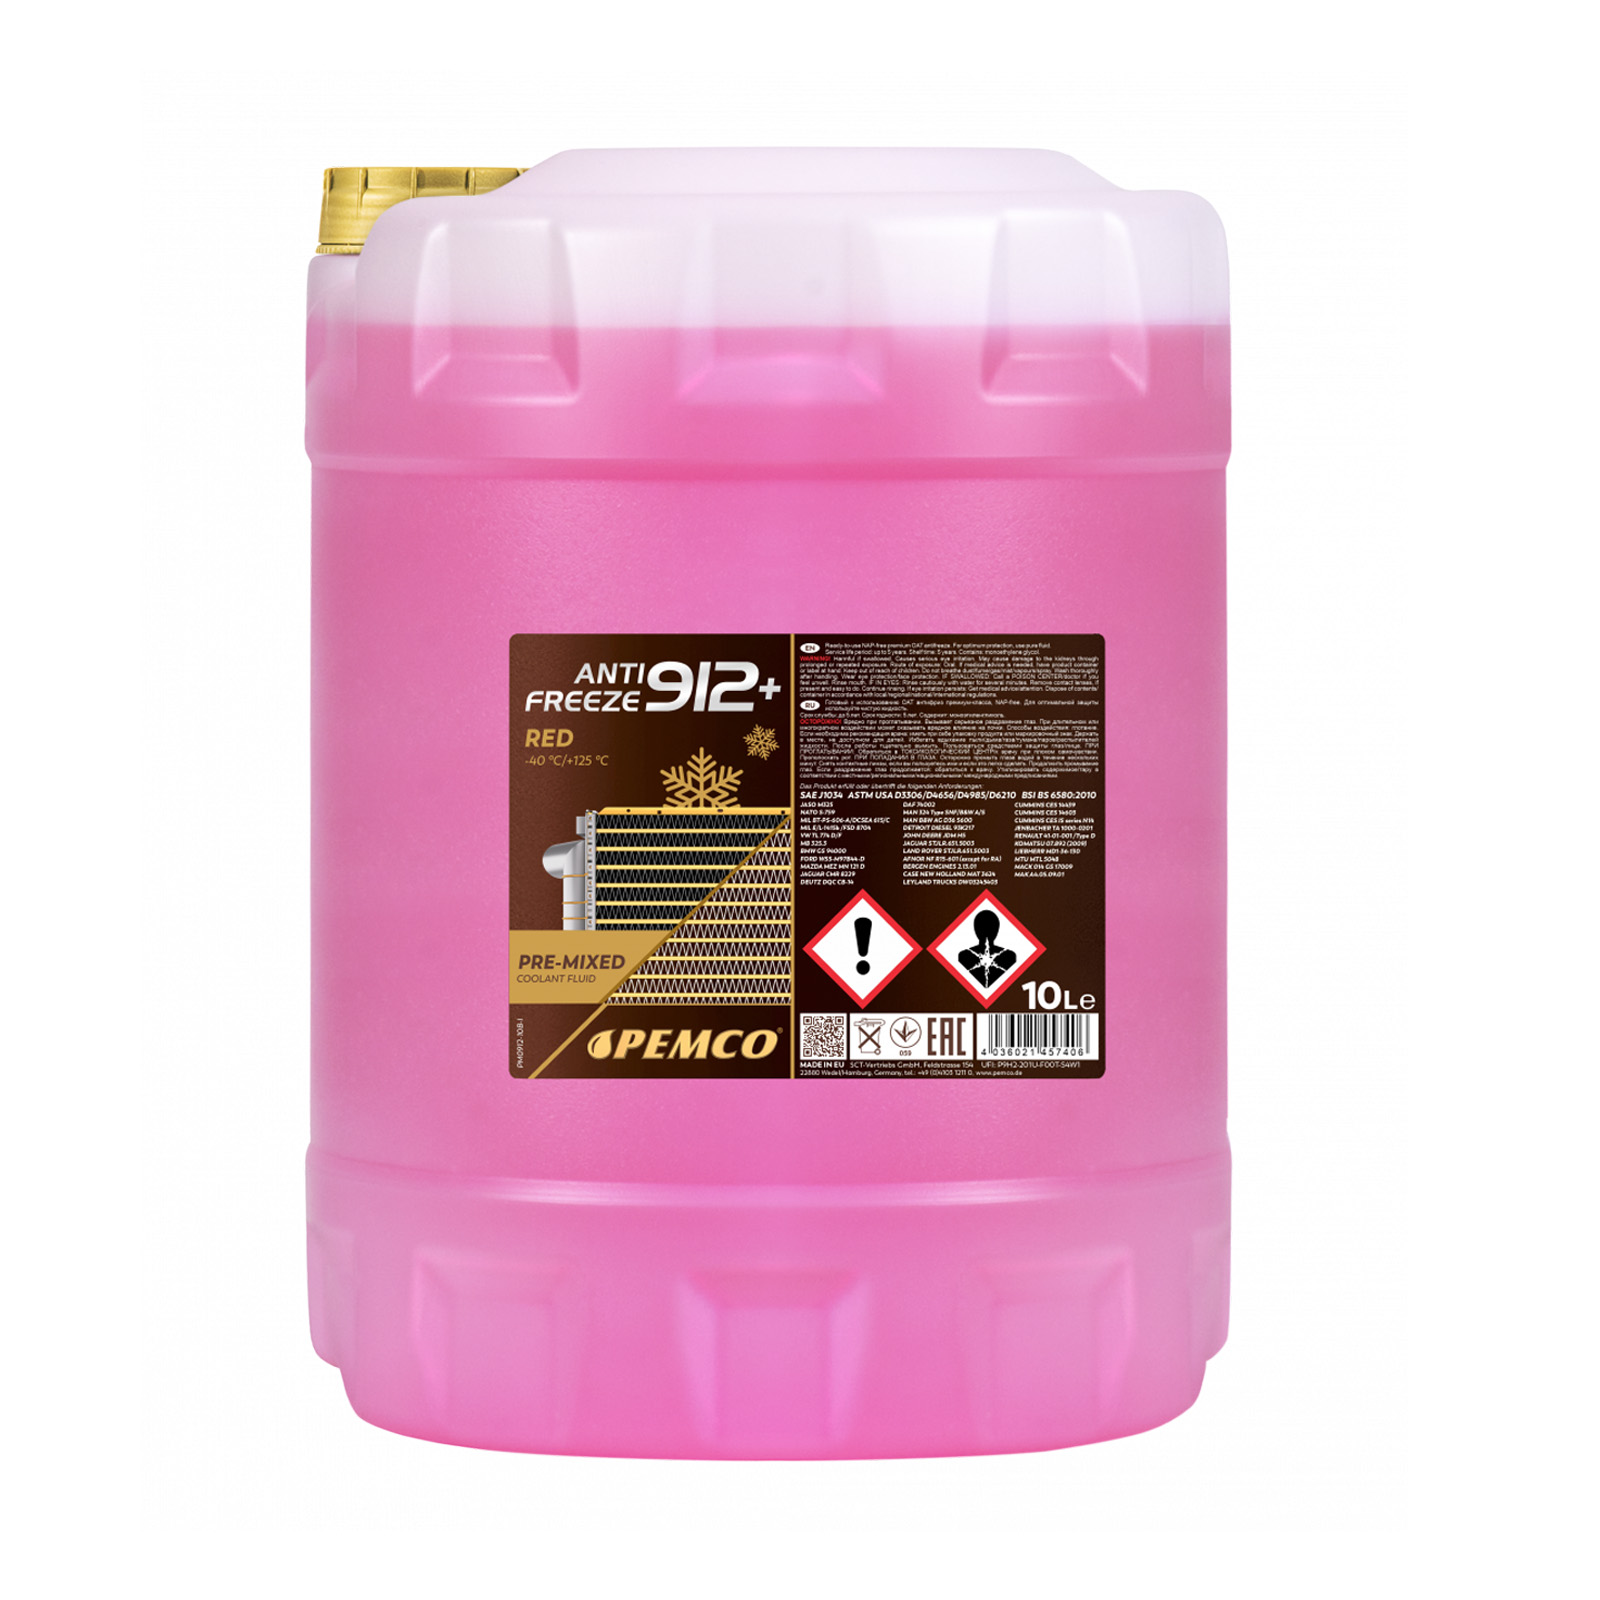 10 Liter PEMCO Anti Freeze 912+ Kühler Frostschutz bis -40C rosa rot violett